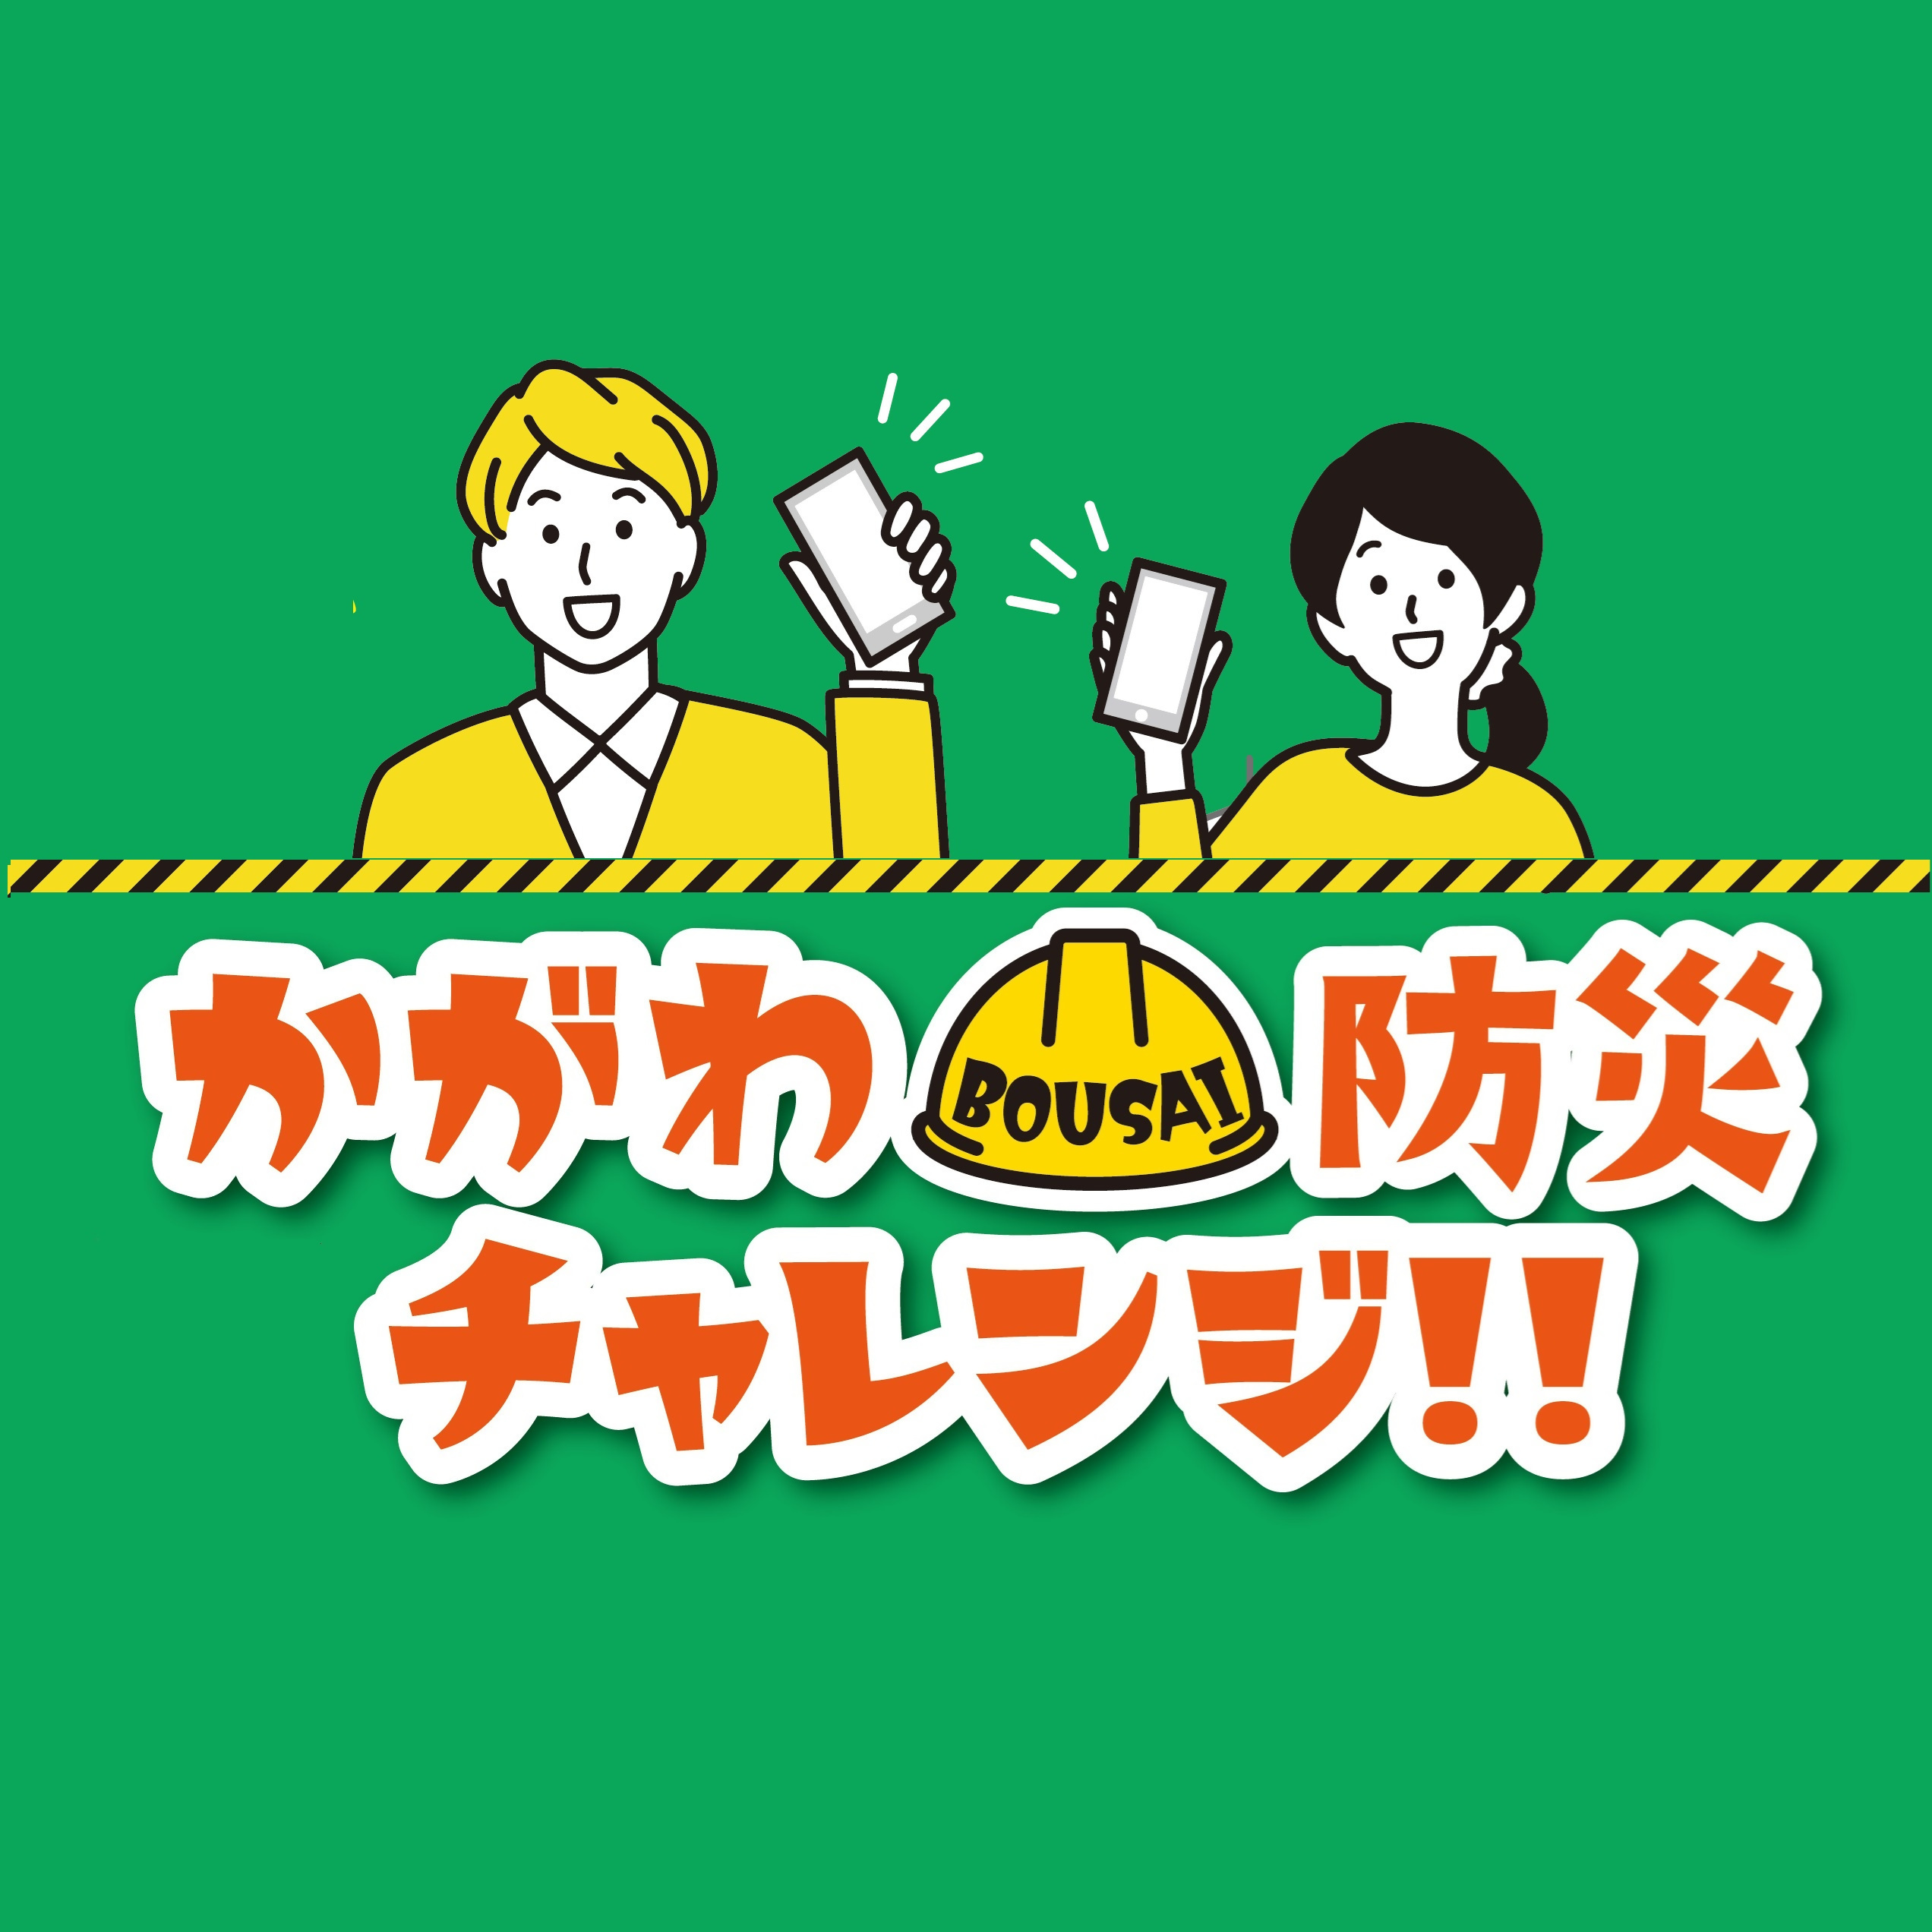 香川県公式防災LINEアカウントの画像